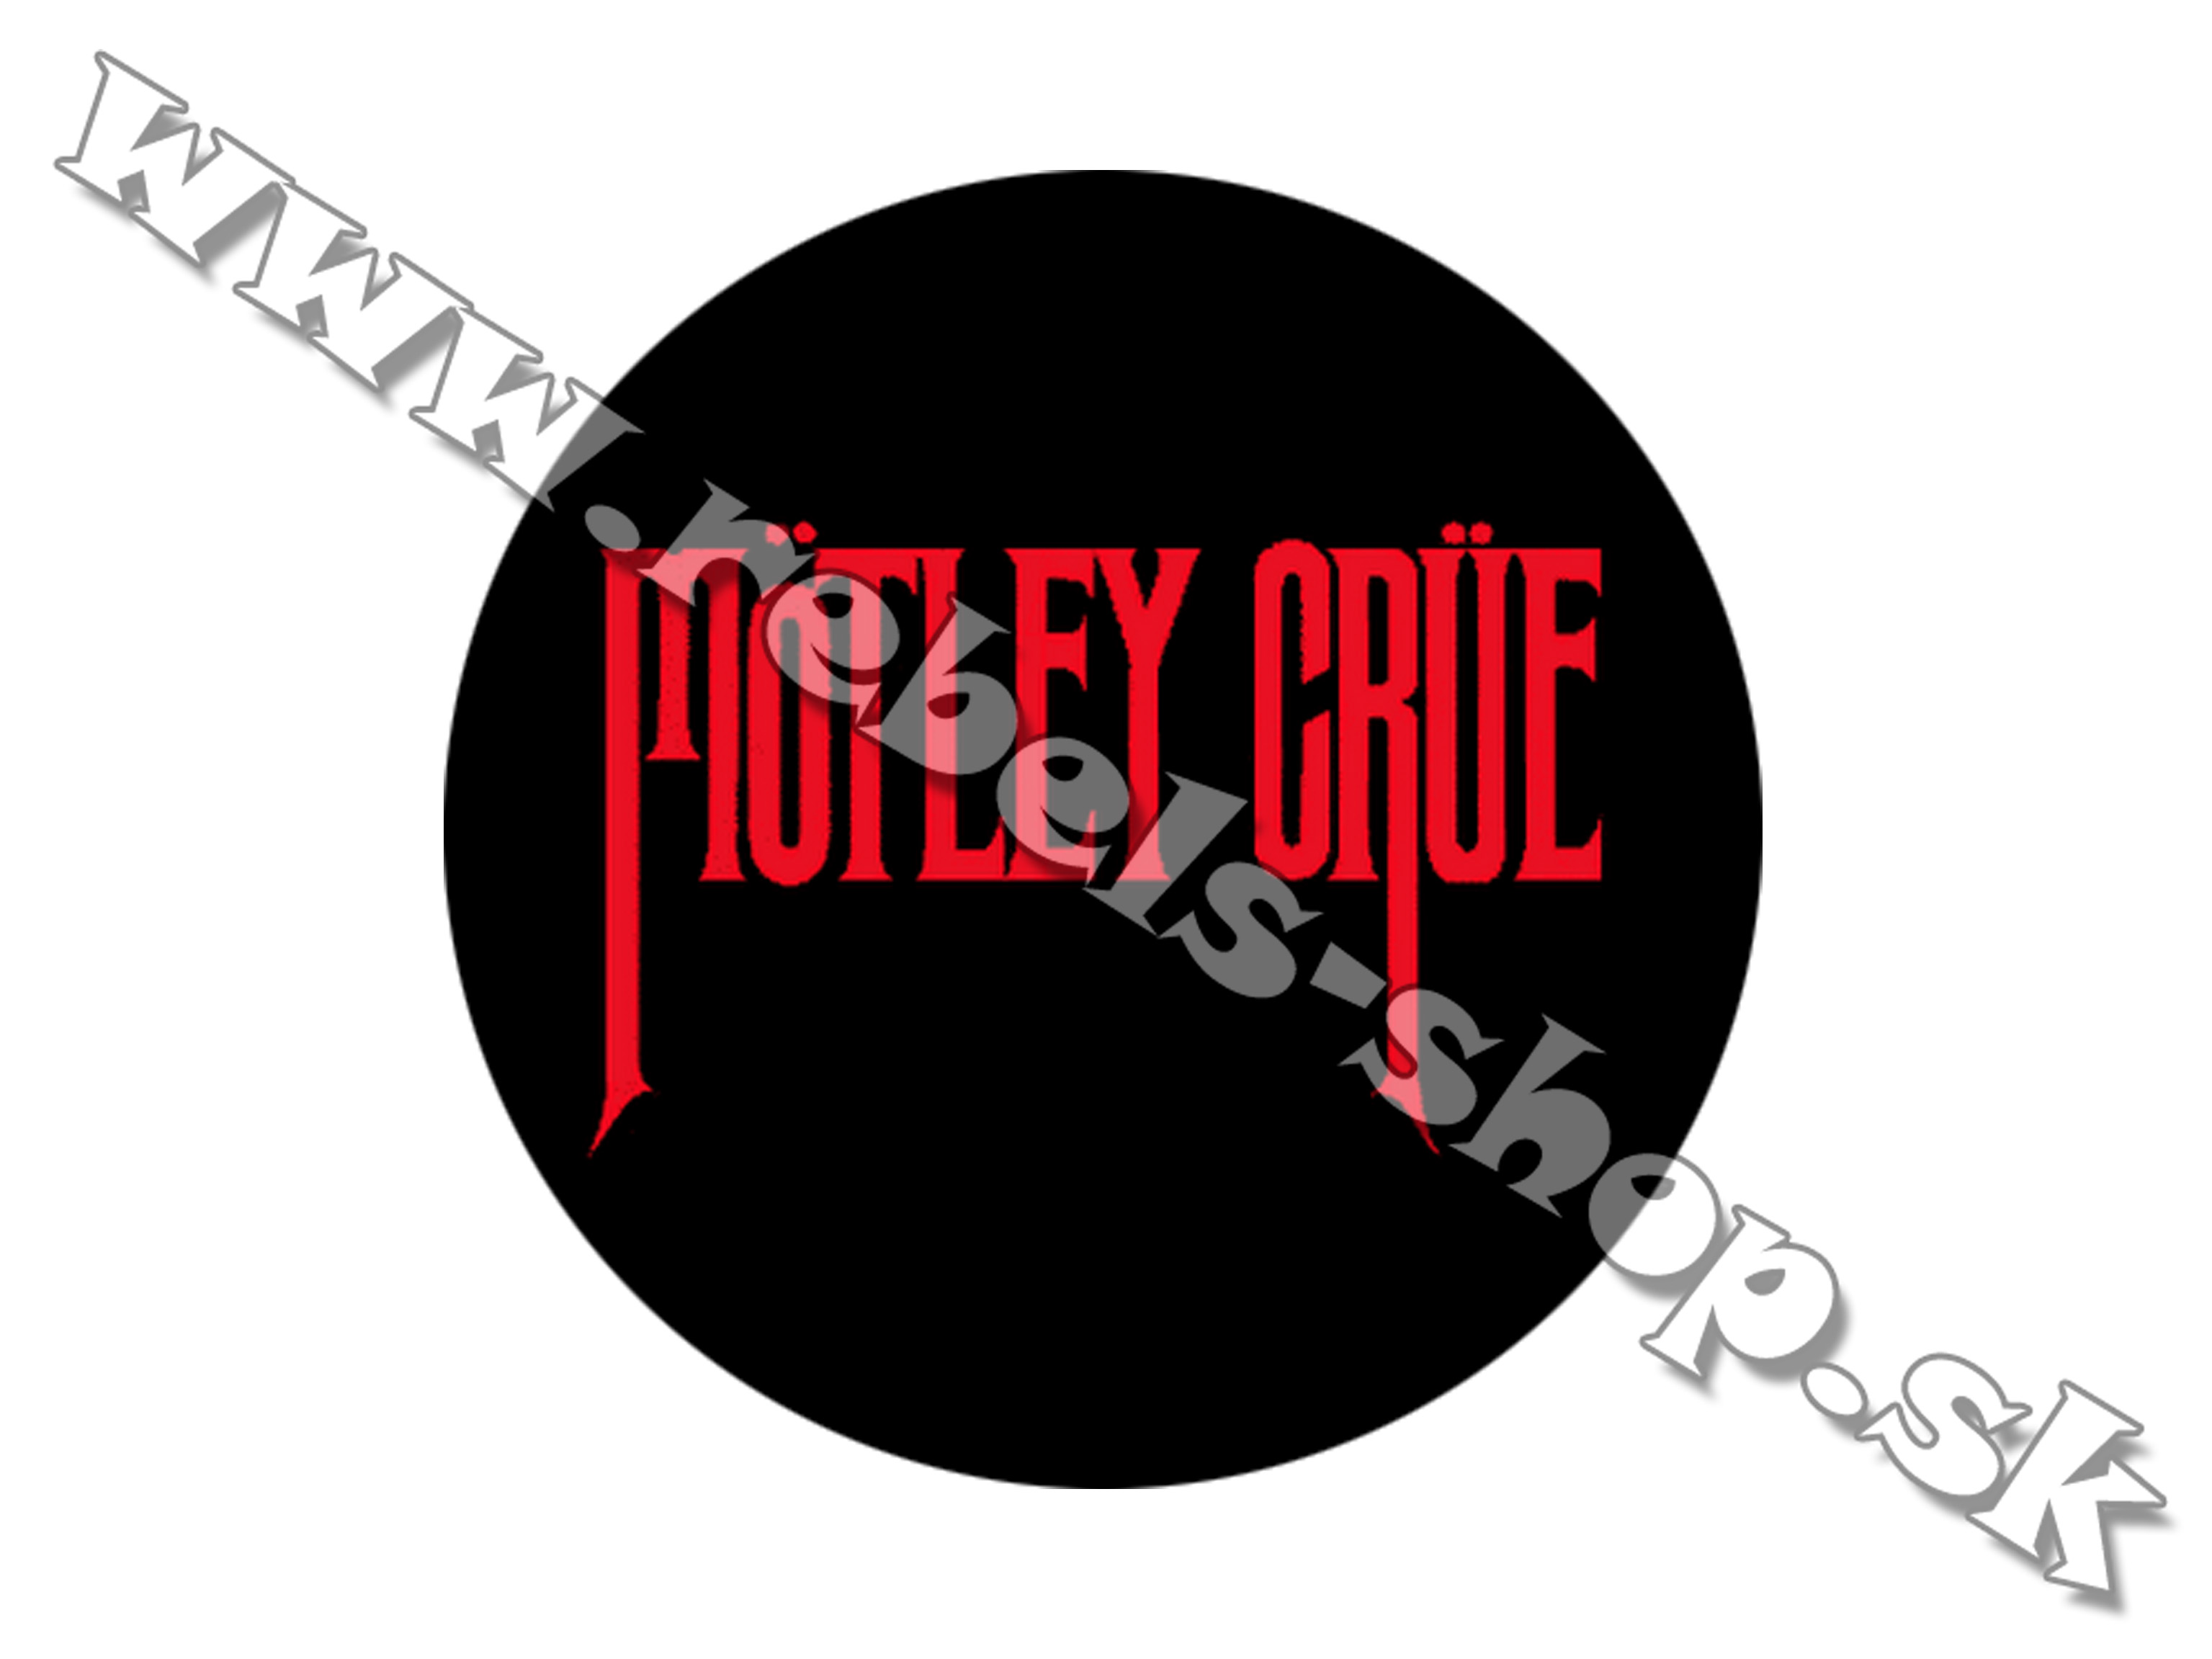 Odznak "Mötley Crüe"